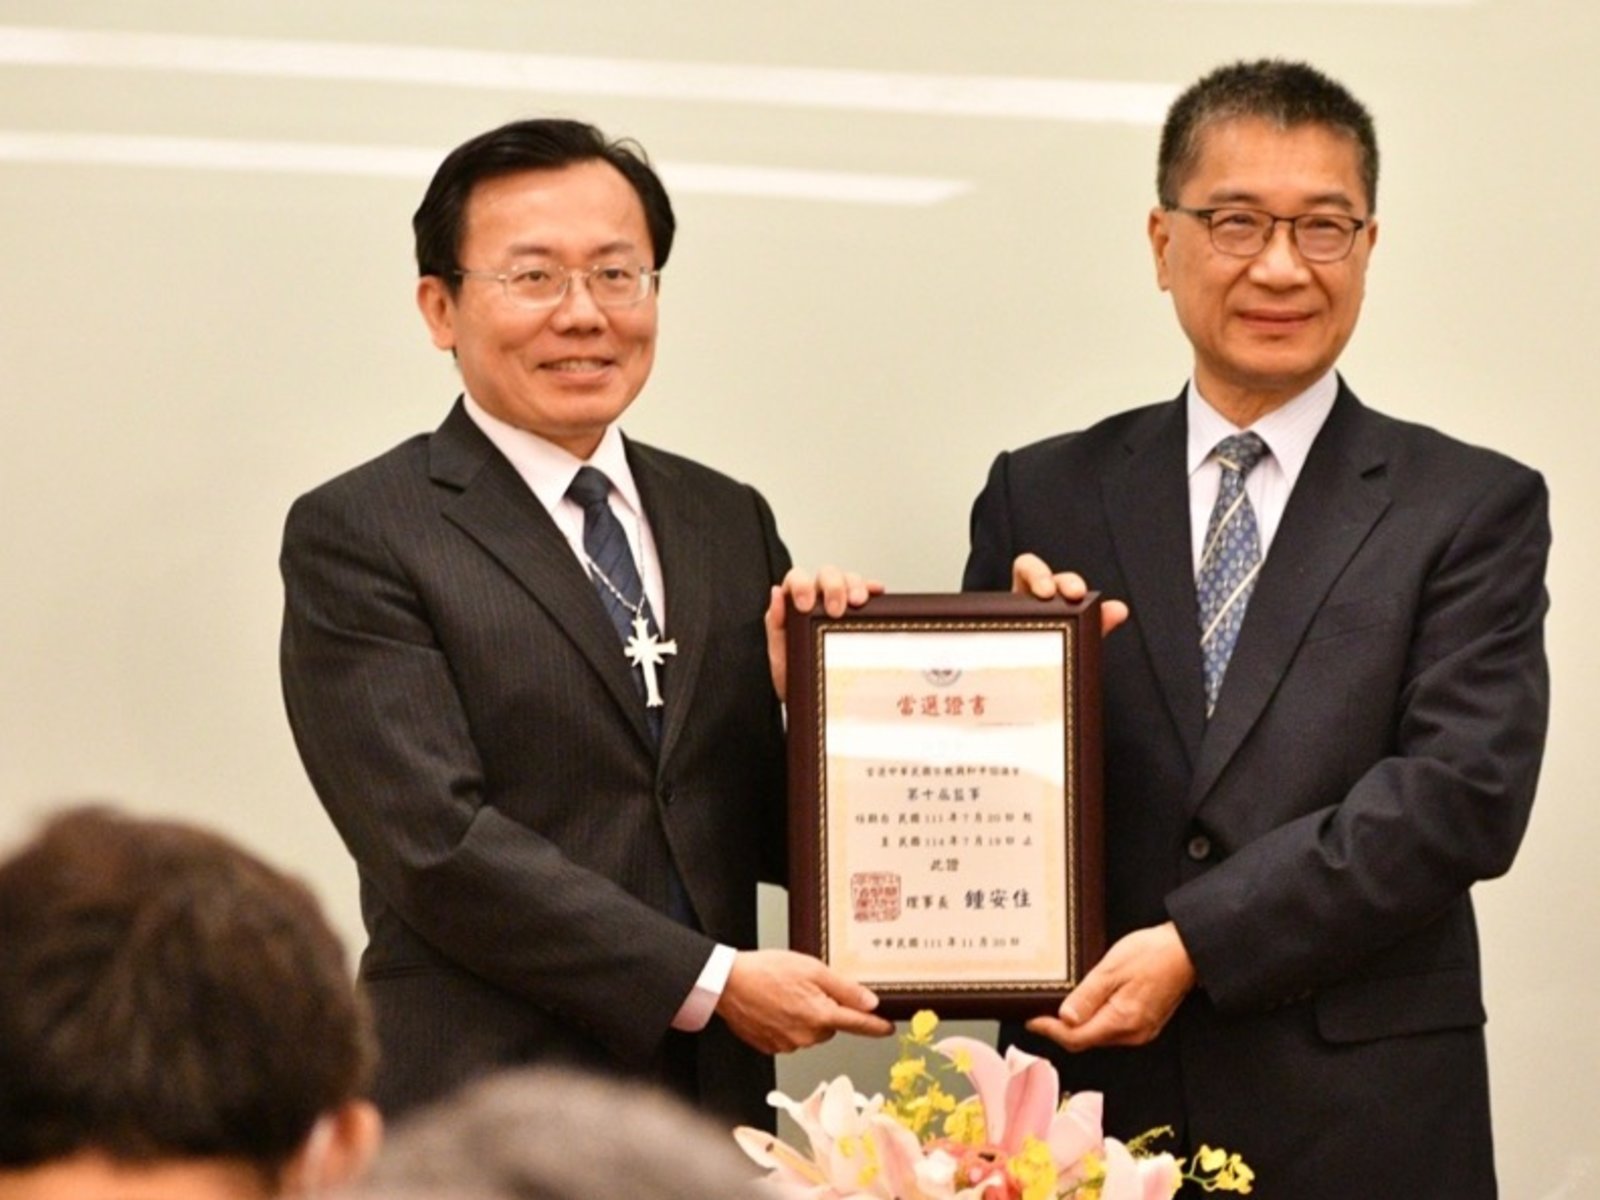 Ministr vnitra Tchaj-wanu předává výkonnému řediteli Scientologické církve v Kaohsiungu certifikát, který ho uznává jako člena dozorčí rady mezináboženské asociace